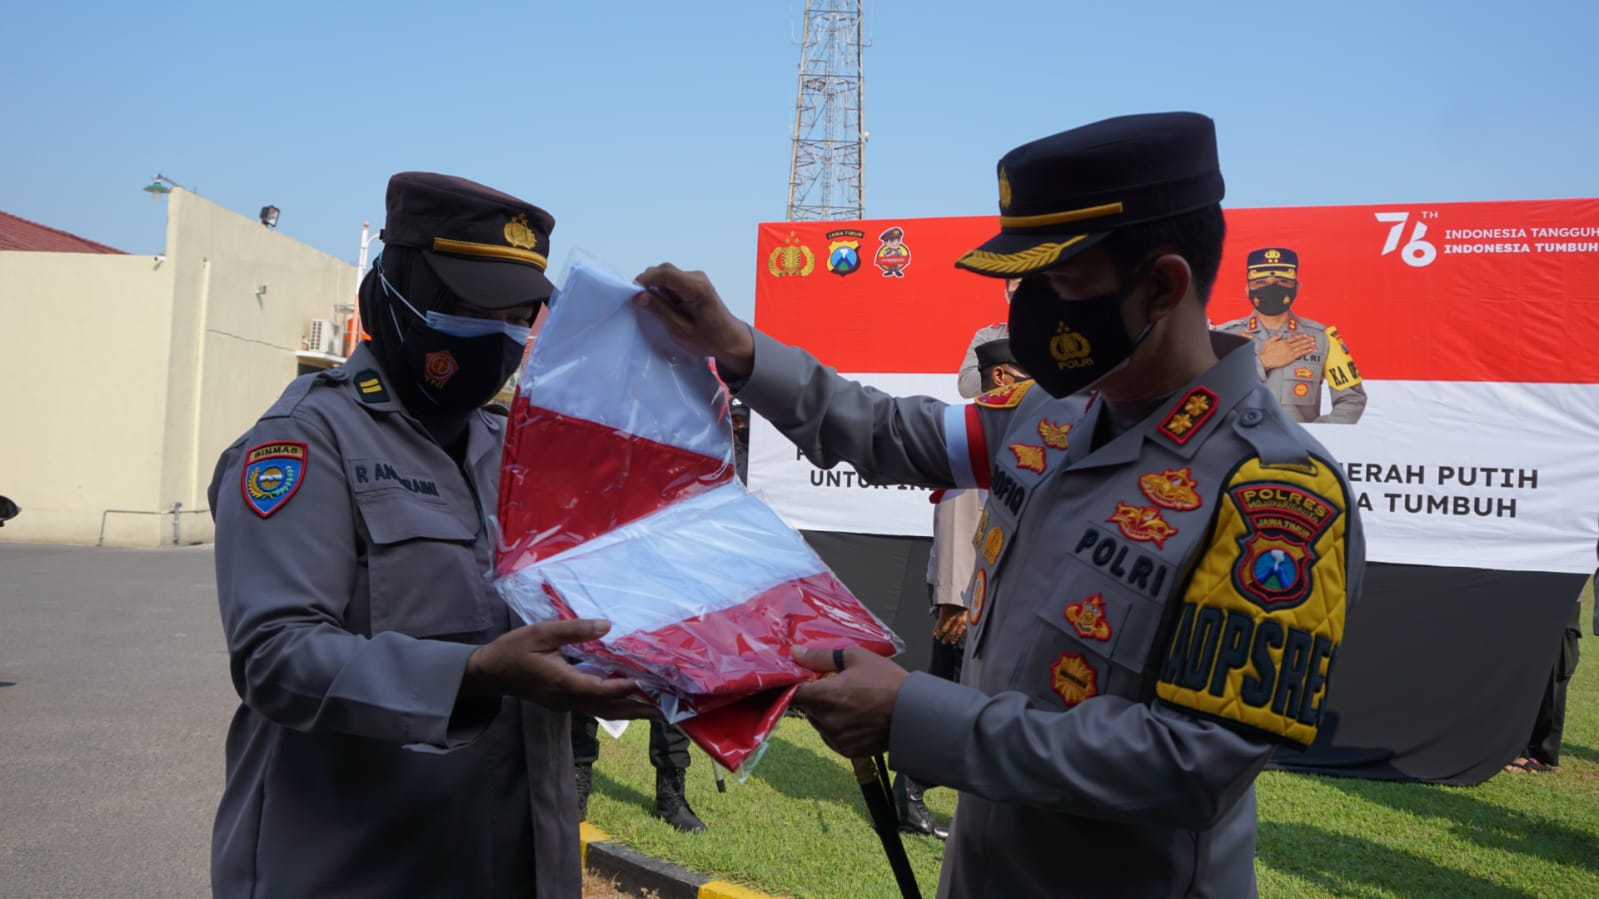 Polresta Mojokerto Distribusikan 76 Ribu Bendera Merah Putih